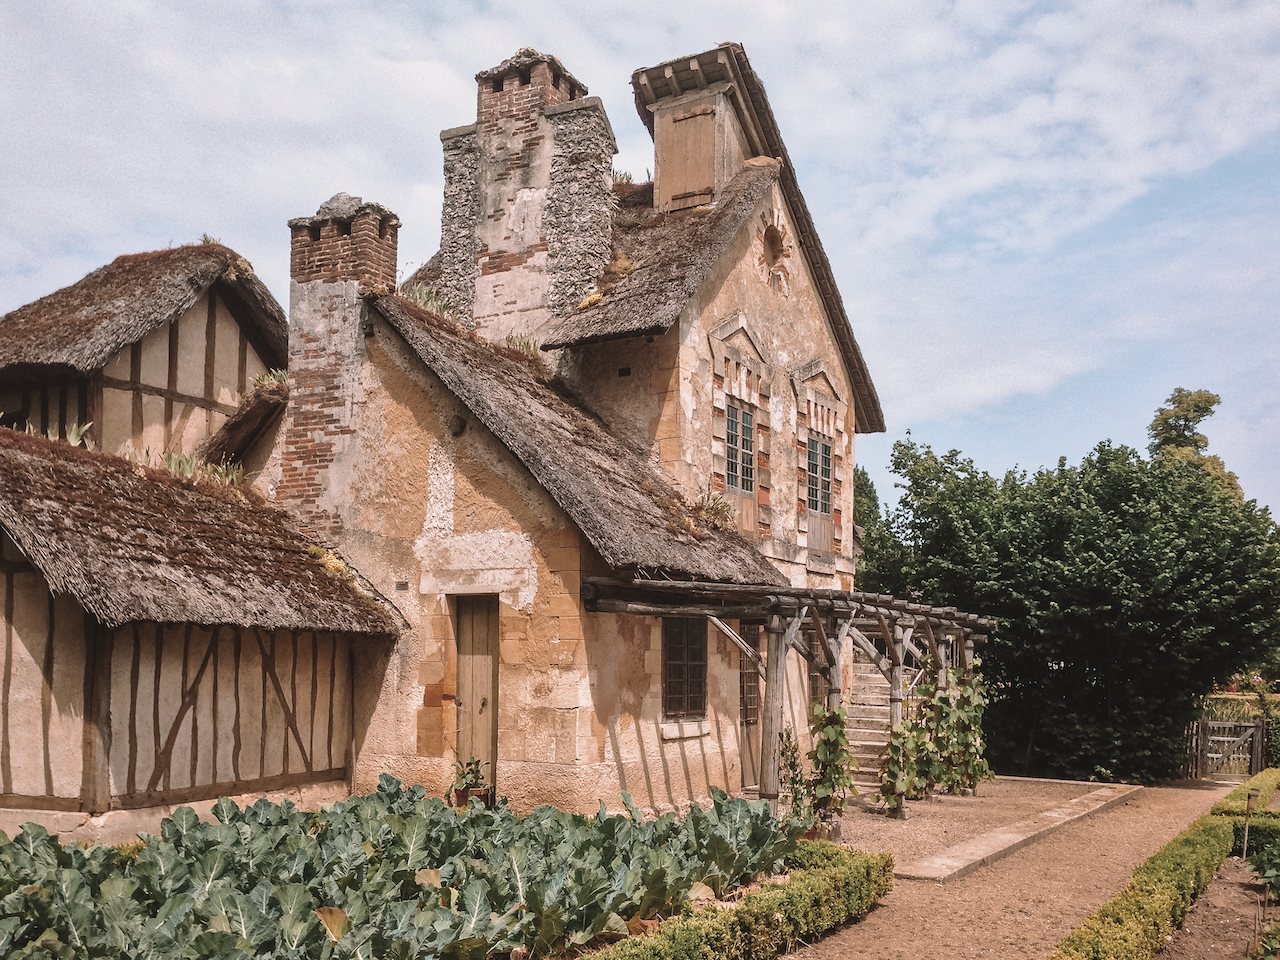 Le hameau de la reine - Versailles - France